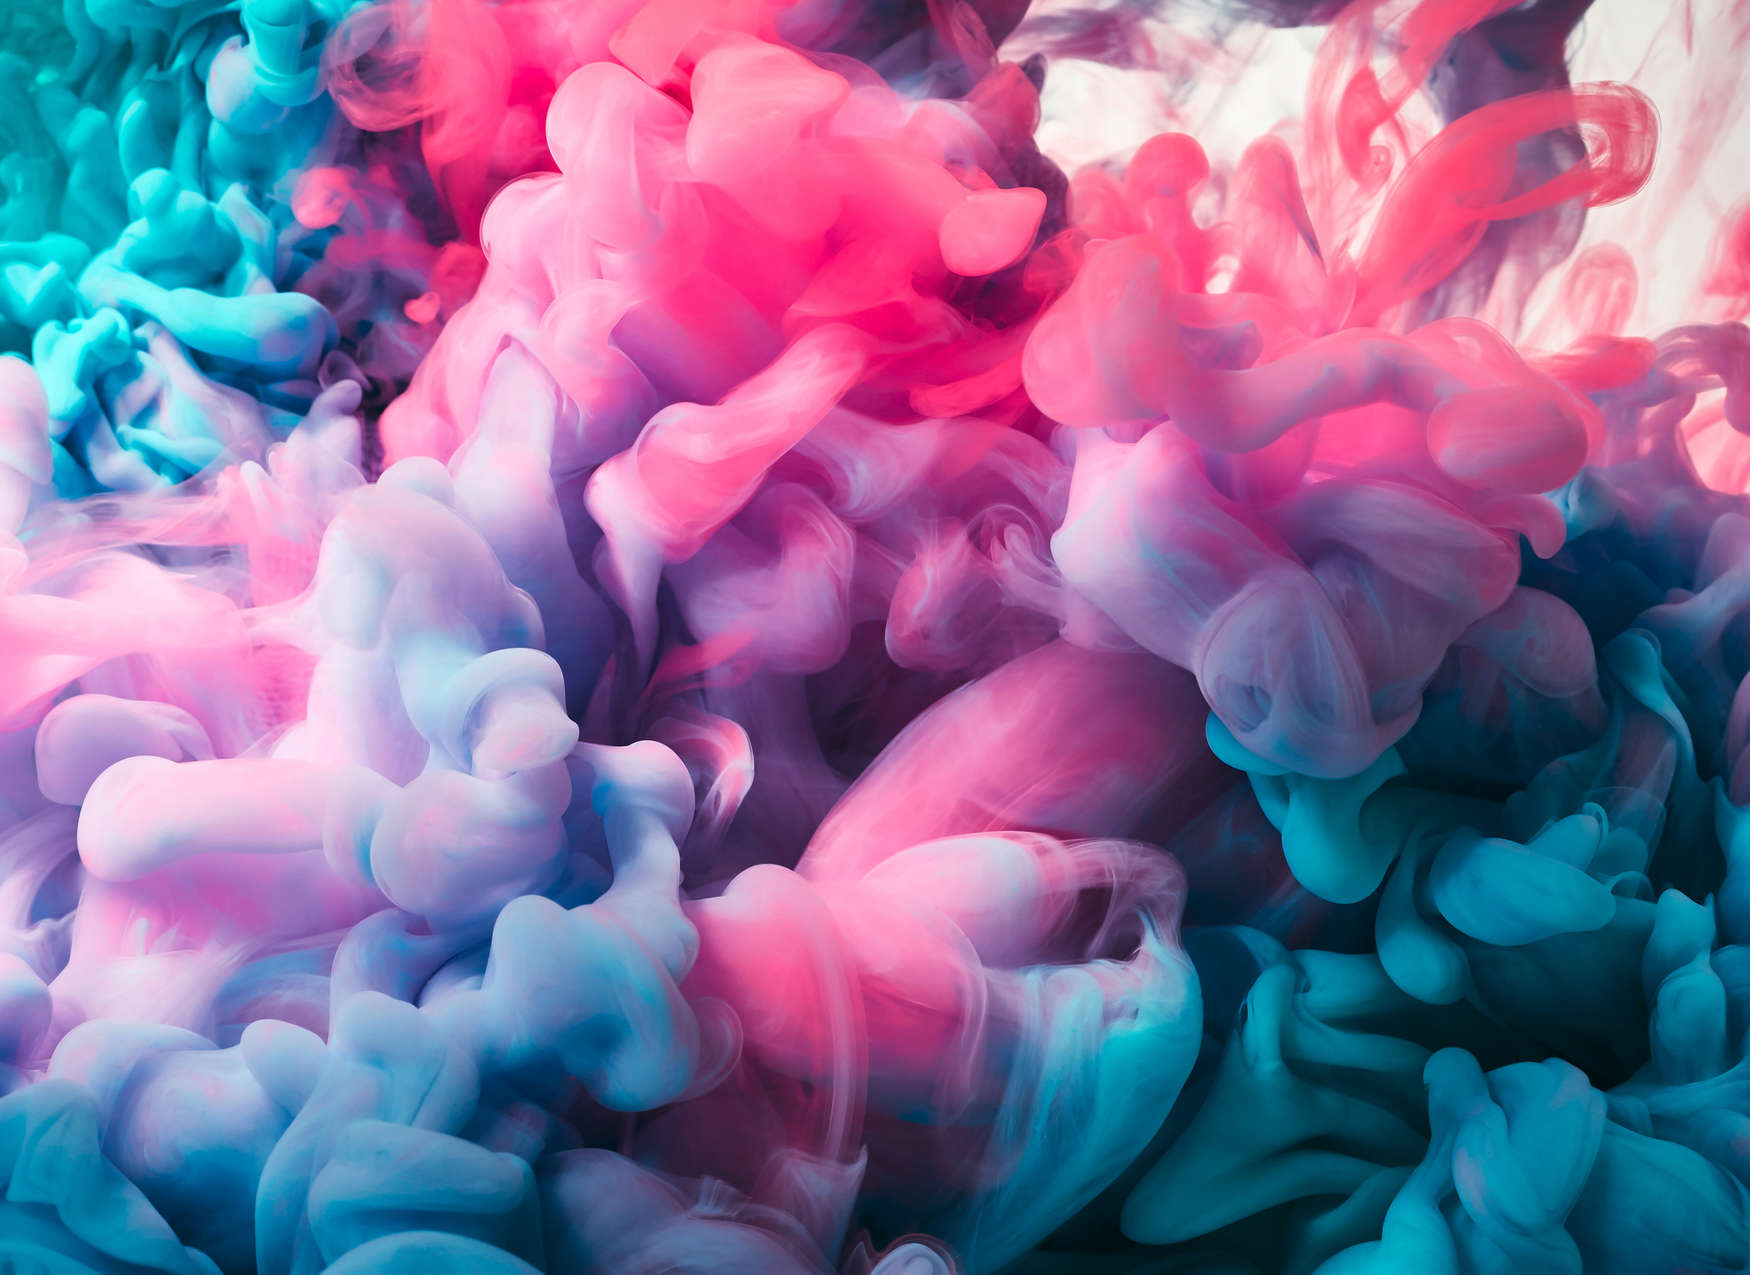             Farbiger Rauch Fototapete – Rosa, Blau, Weiß
        